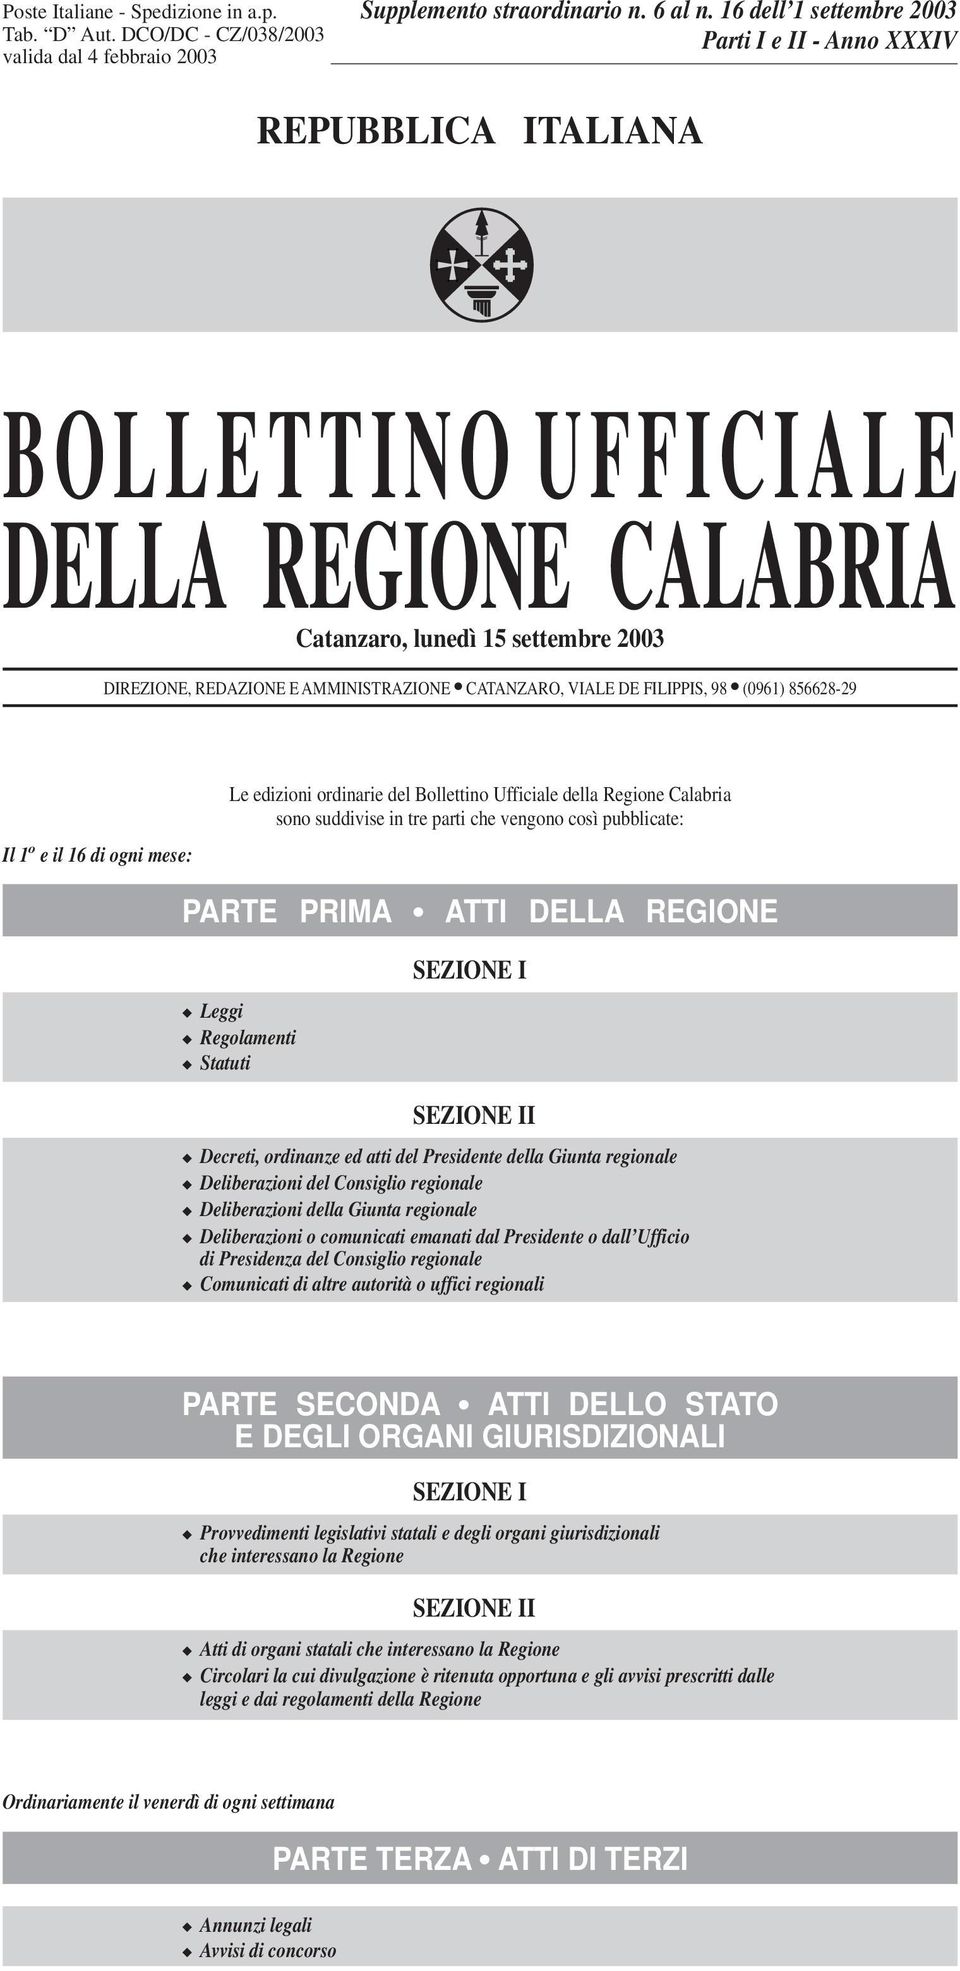 VIALE DE FILIPPIS, 98 (0961) 856628-29 Il 1 o e il 16 di ogni mese: Le edizioni ordinarie del Bollettino Ufficiale della Regione Calabria sono suddivise in tre parti che vengono così pubblicate: